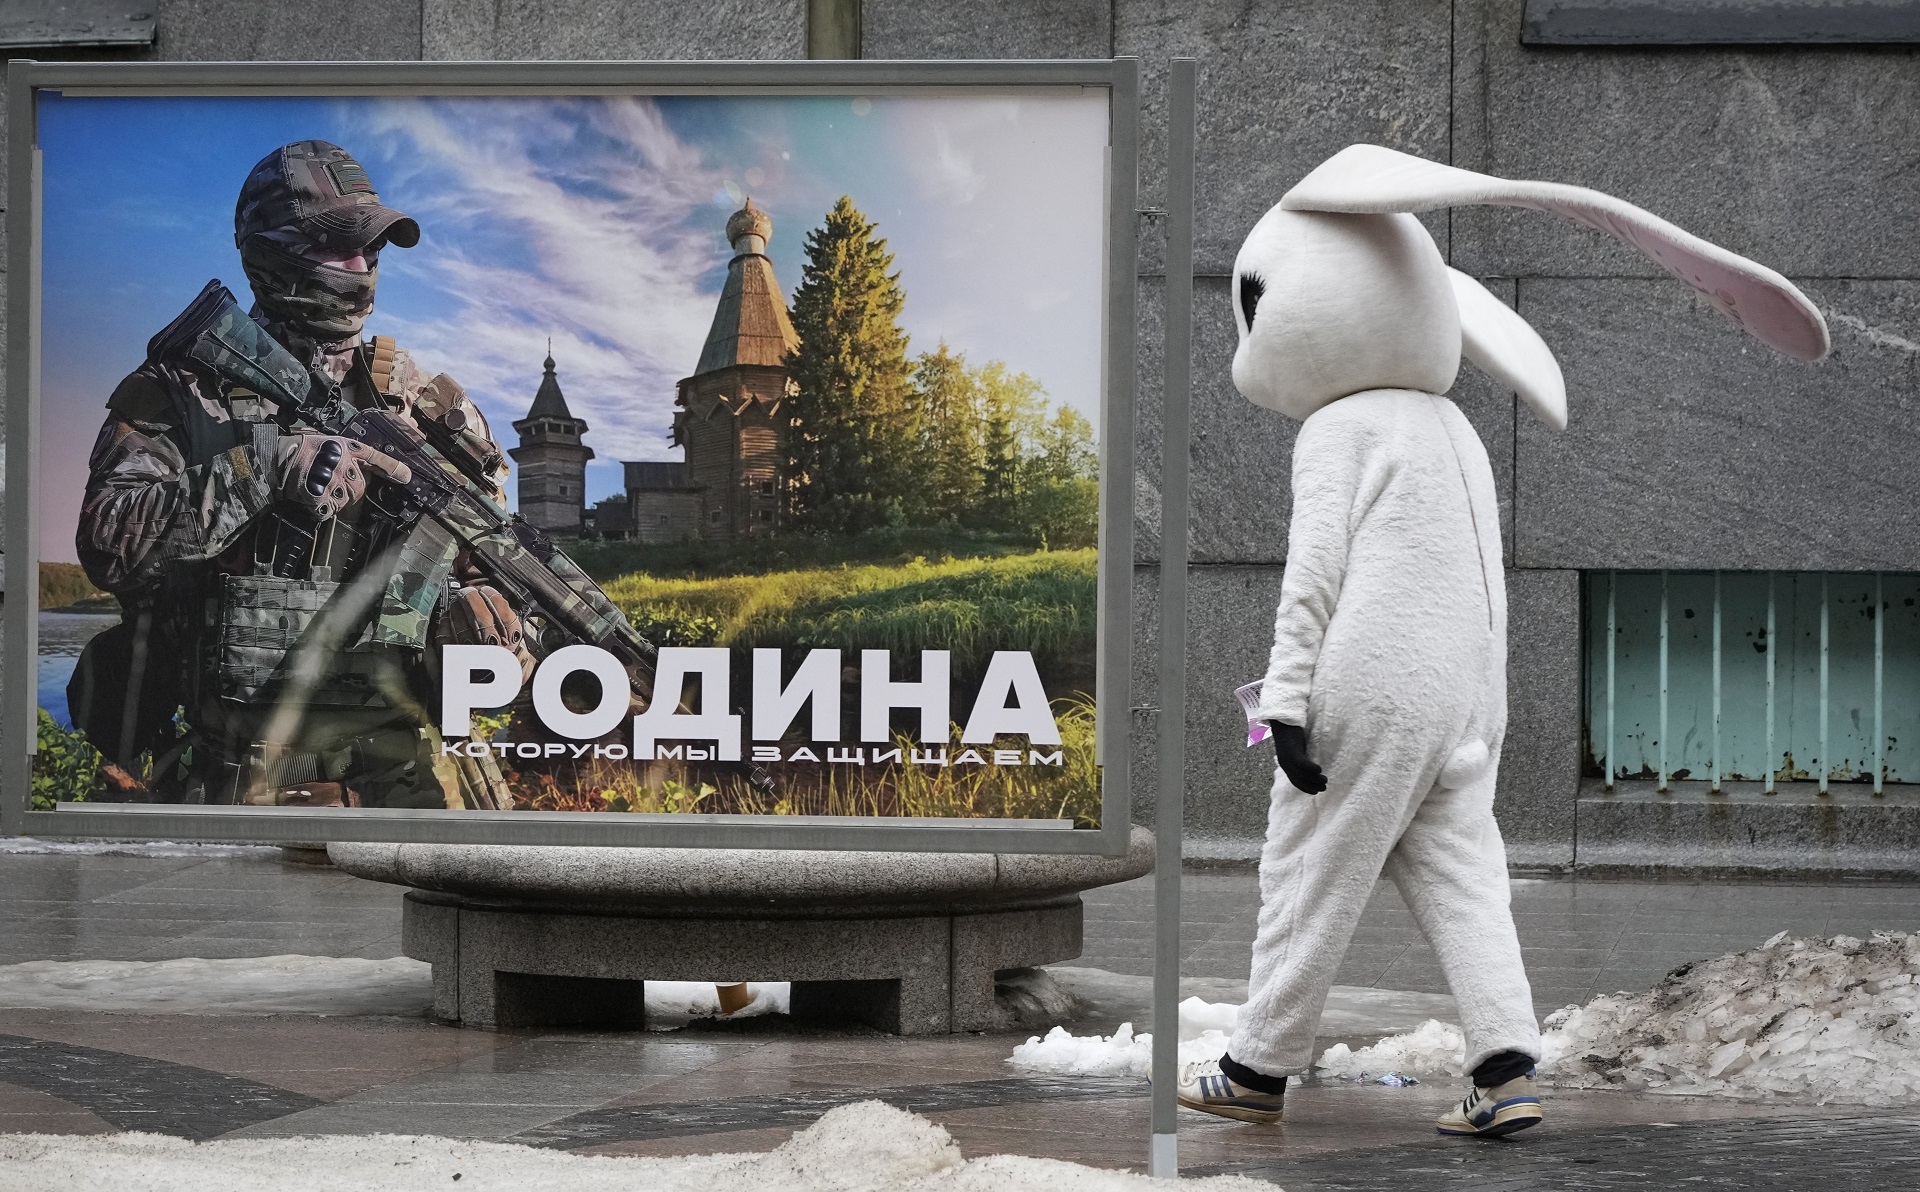 Una persona disfrazada camina por un cartel que dice "La patria que defendemos" en San Petersburgo (AP)